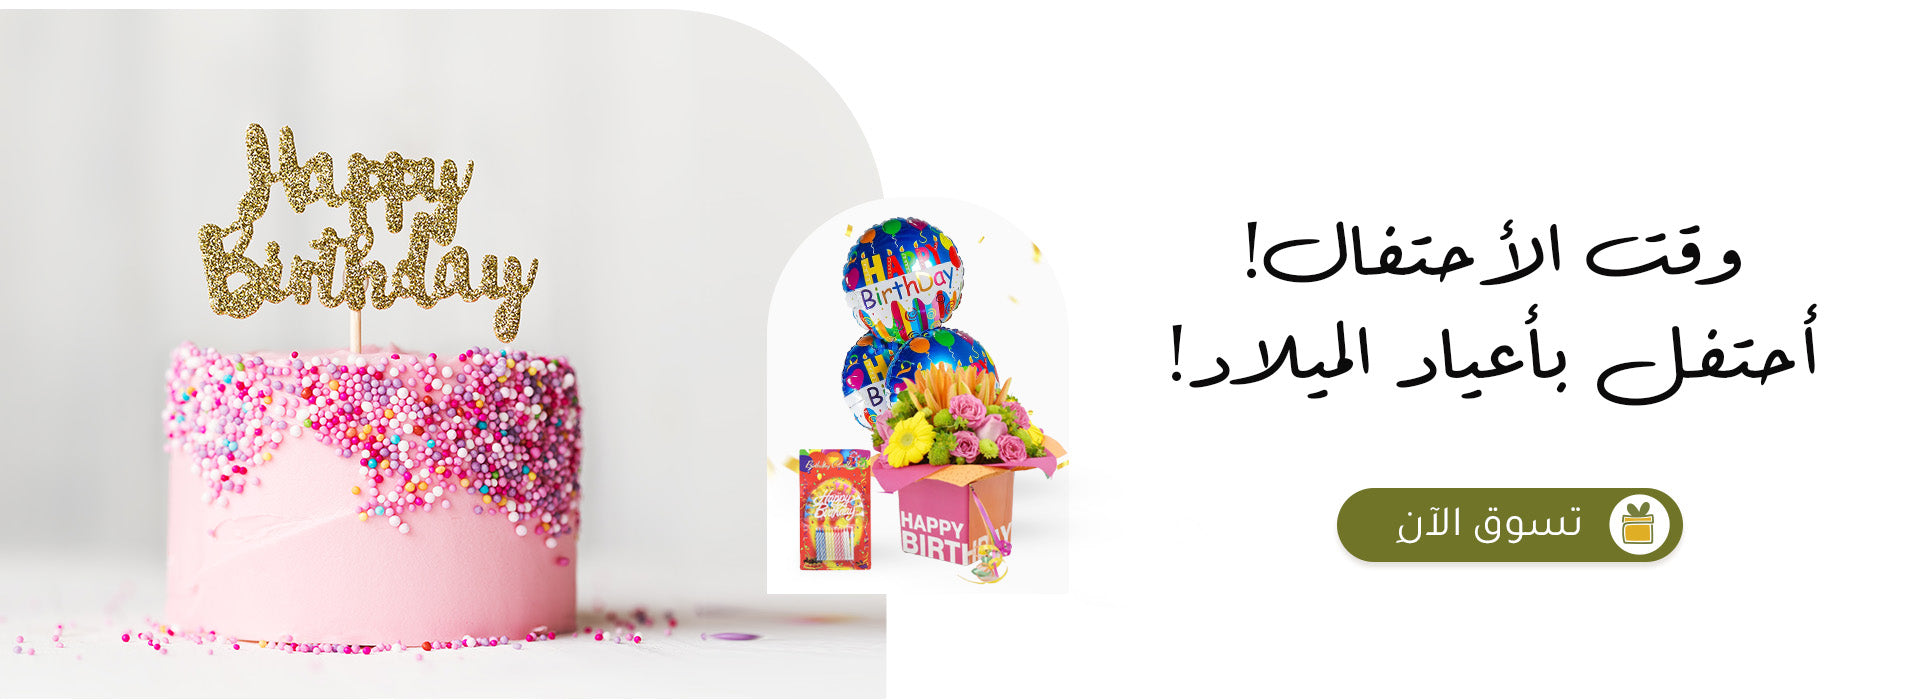 Arabic_Dsite_banner_birthday